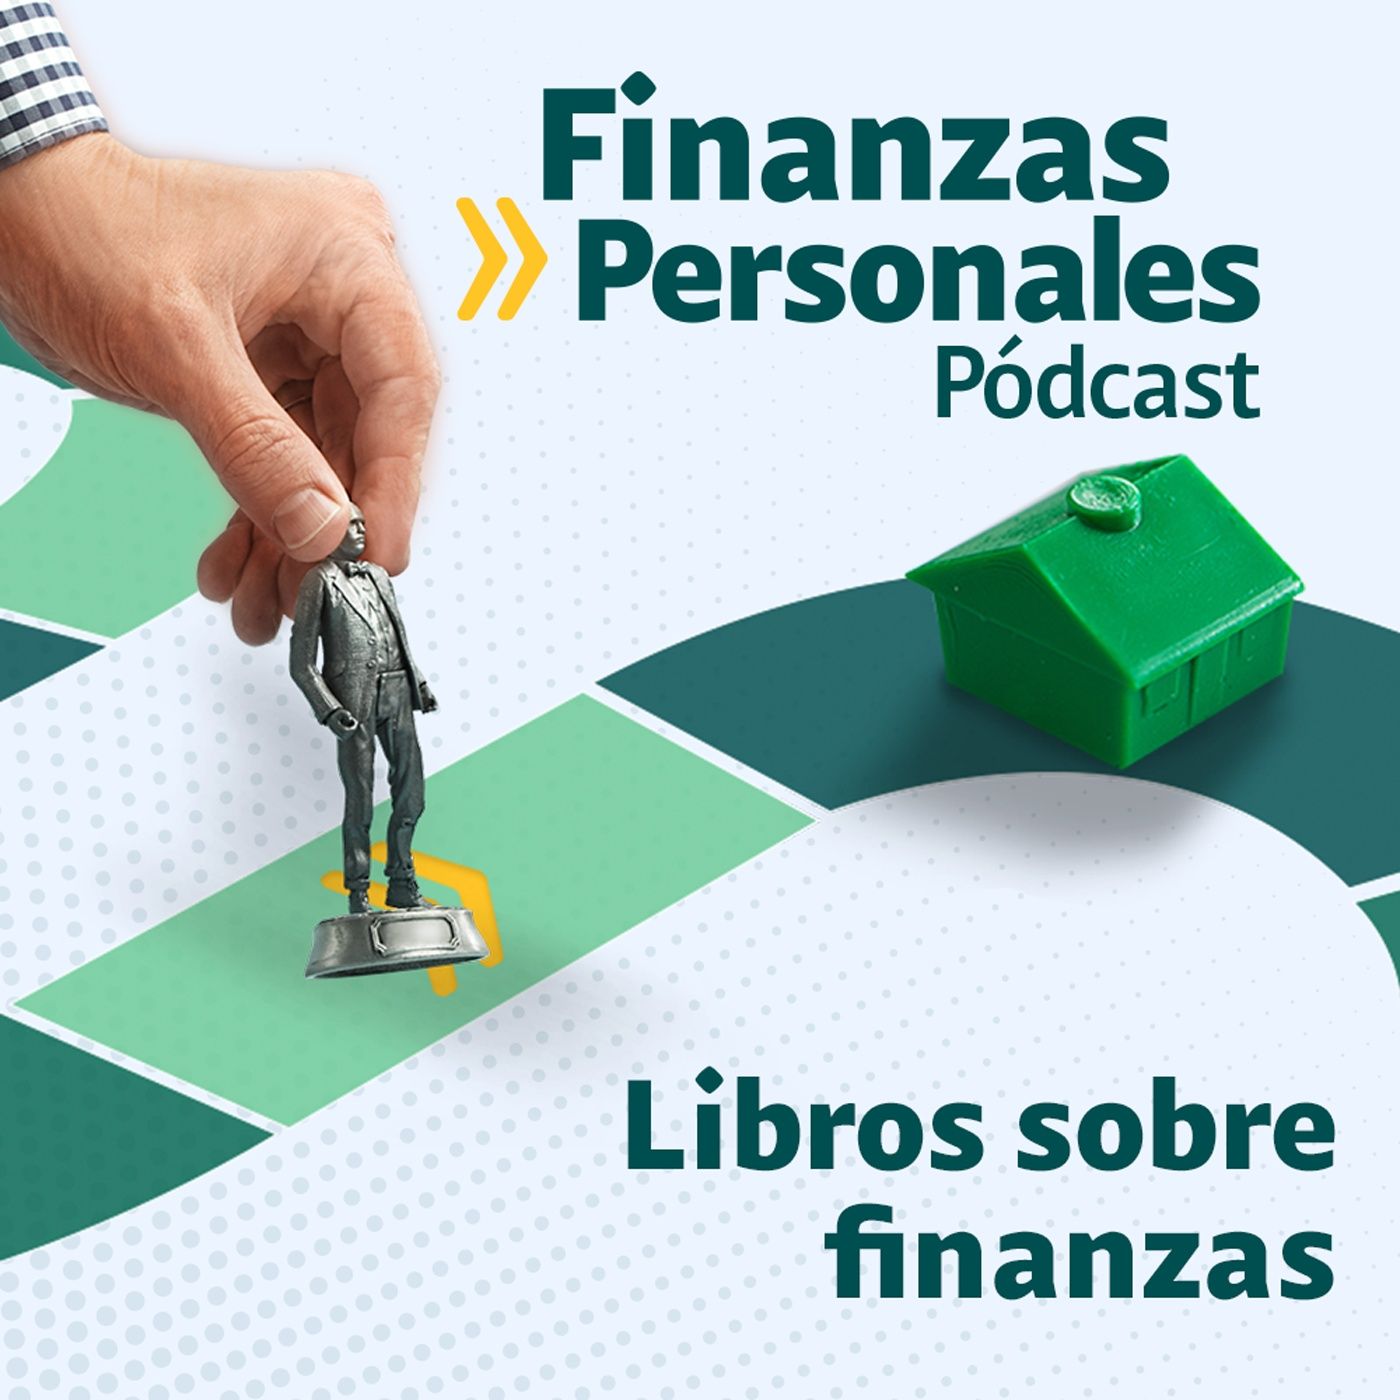 Finanzas Personales: Los libros que cambiarán su forma de ver la economía y las finanzas personales